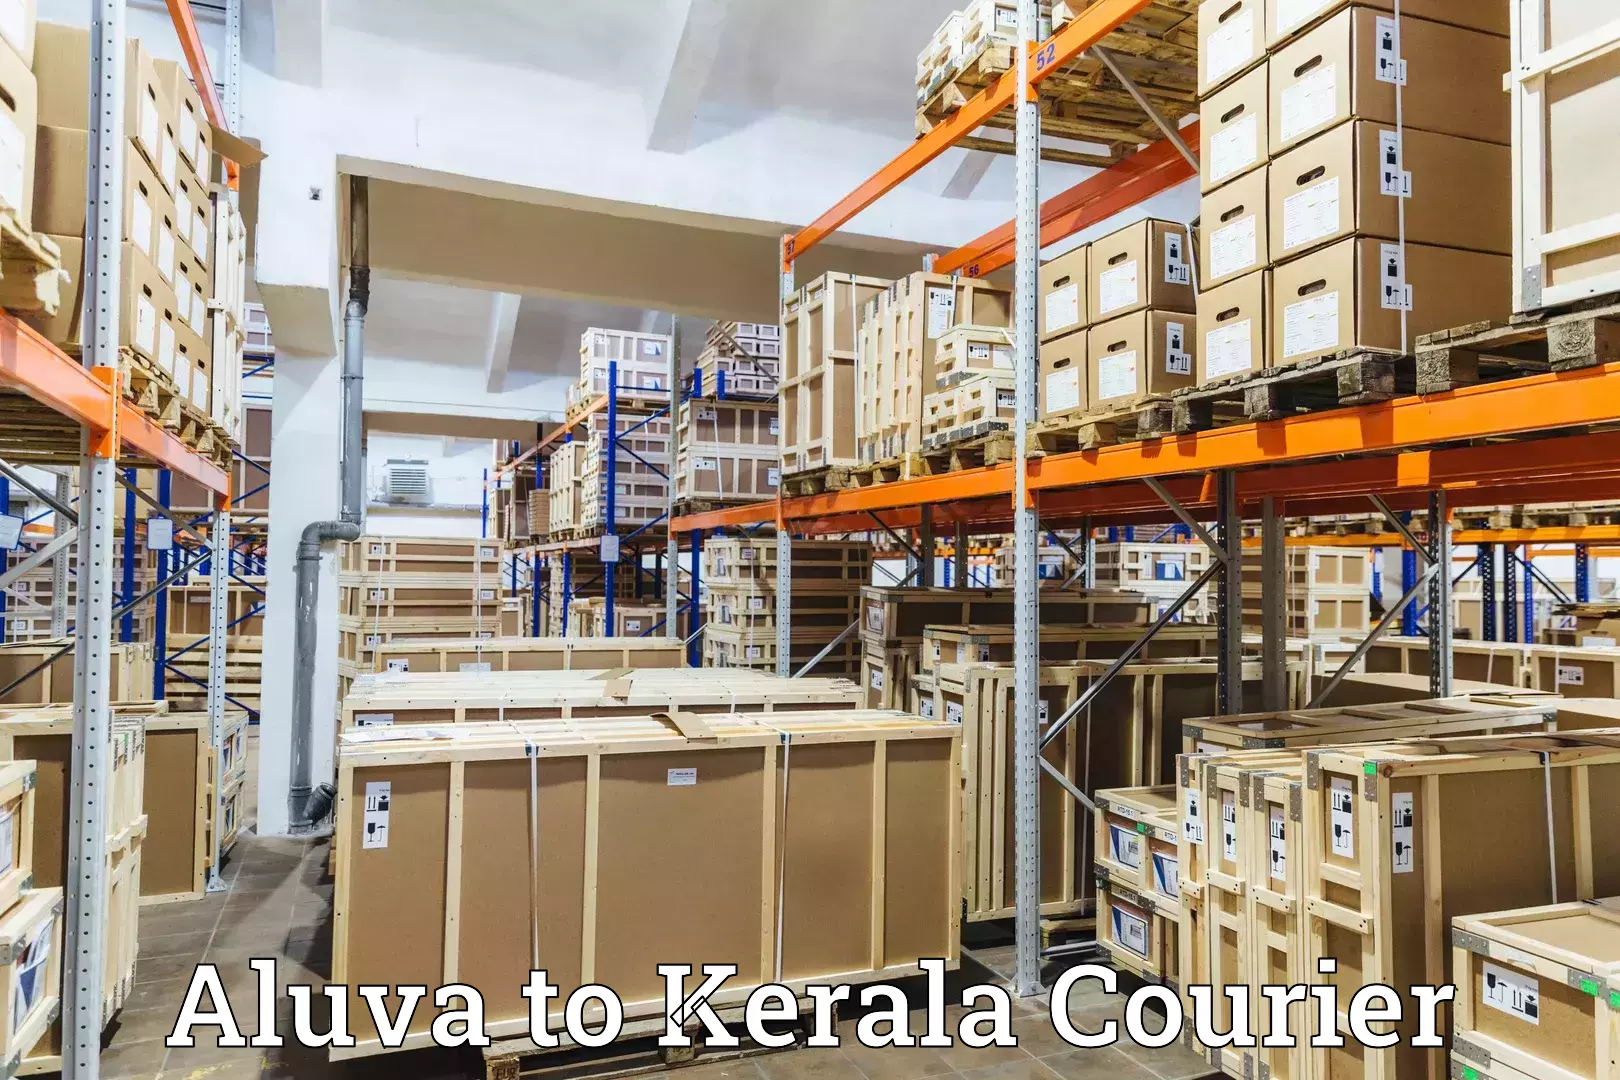 High-capacity shipping options Aluva to Kattappana